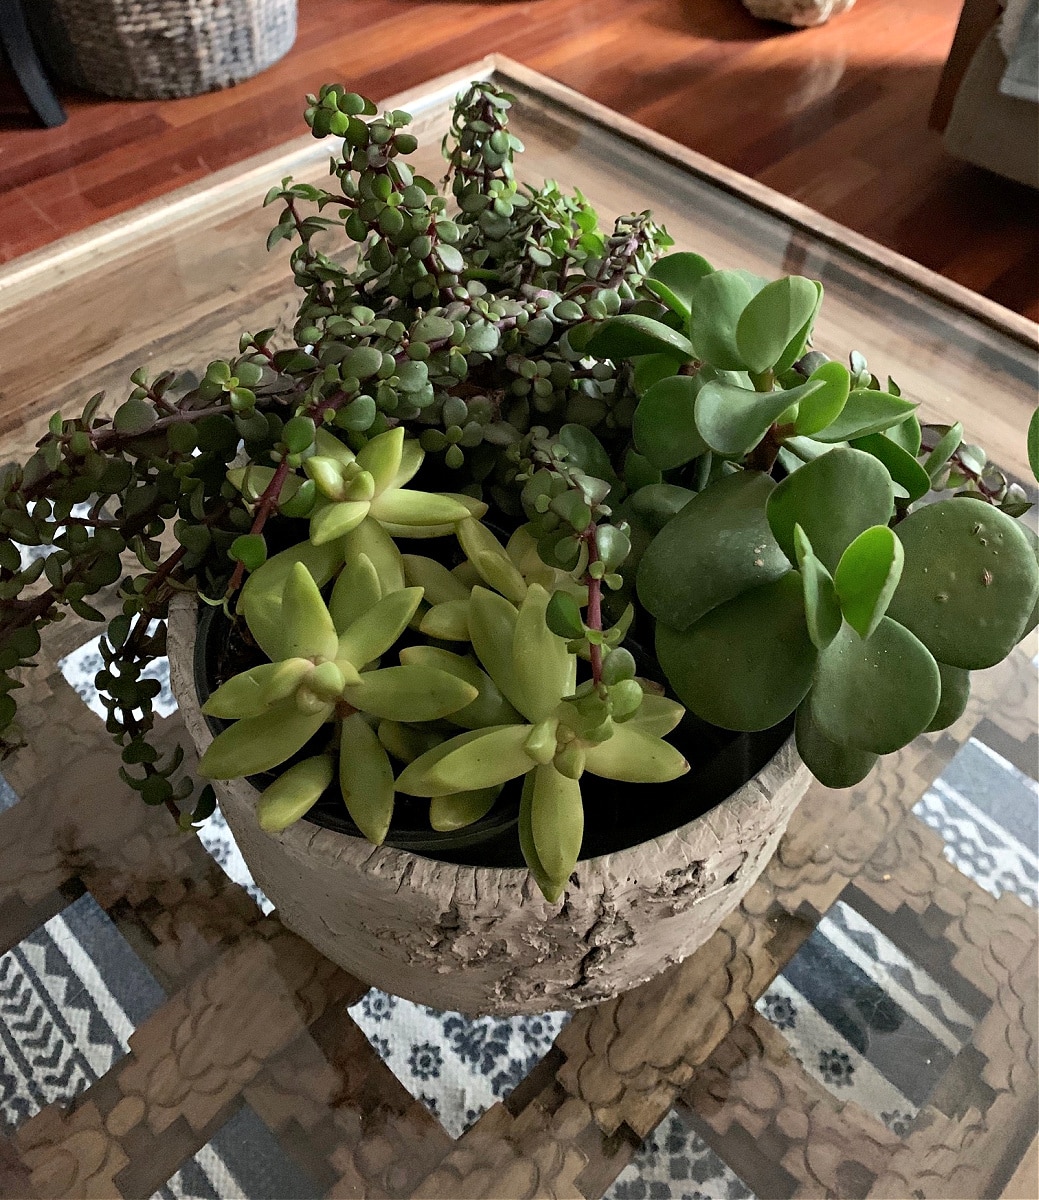 Succulents in a pot